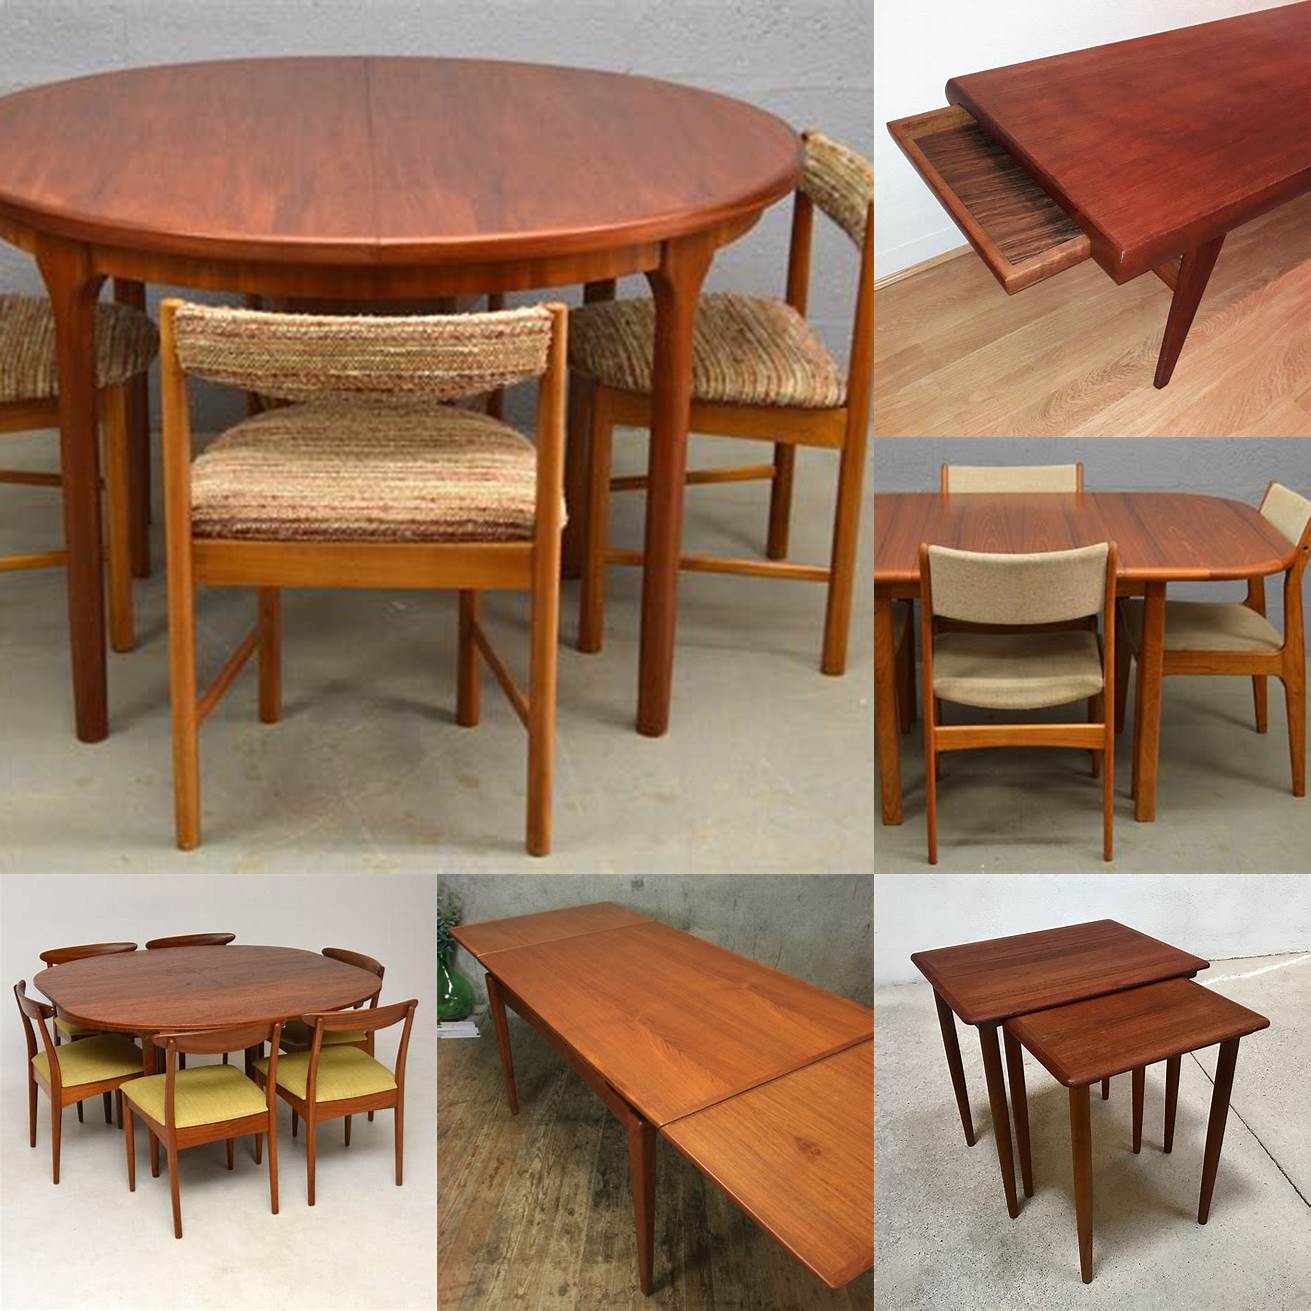 Antique Teak Furniture Table